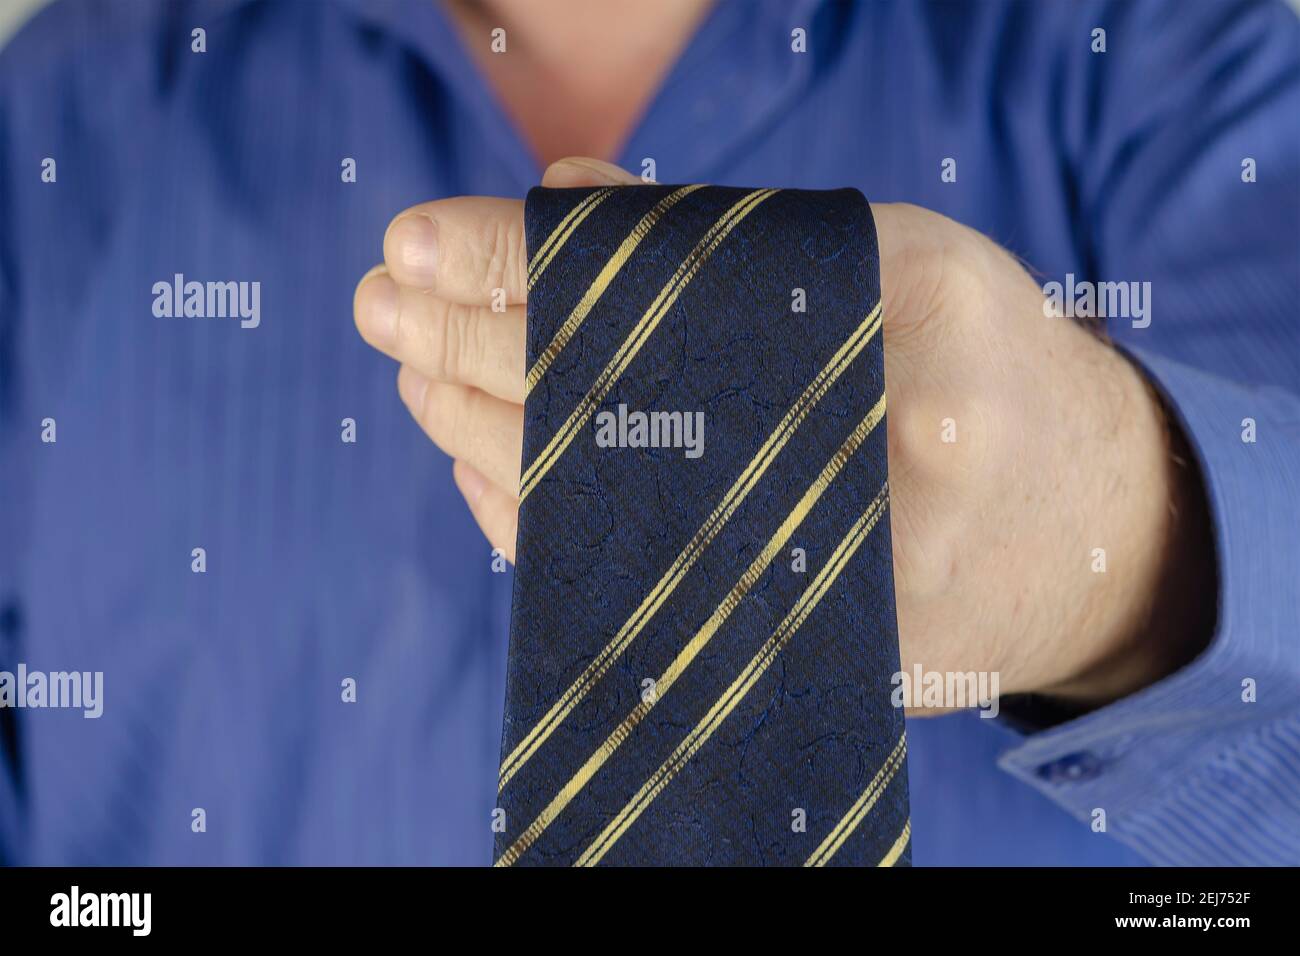 Un homme adulte en chemise bleue noue une cravate. Mains de sexe masculin  avec une cravate bleue et une bande jaune. Étape par étape. Mise au point  sélective Photo Stock - Alamy